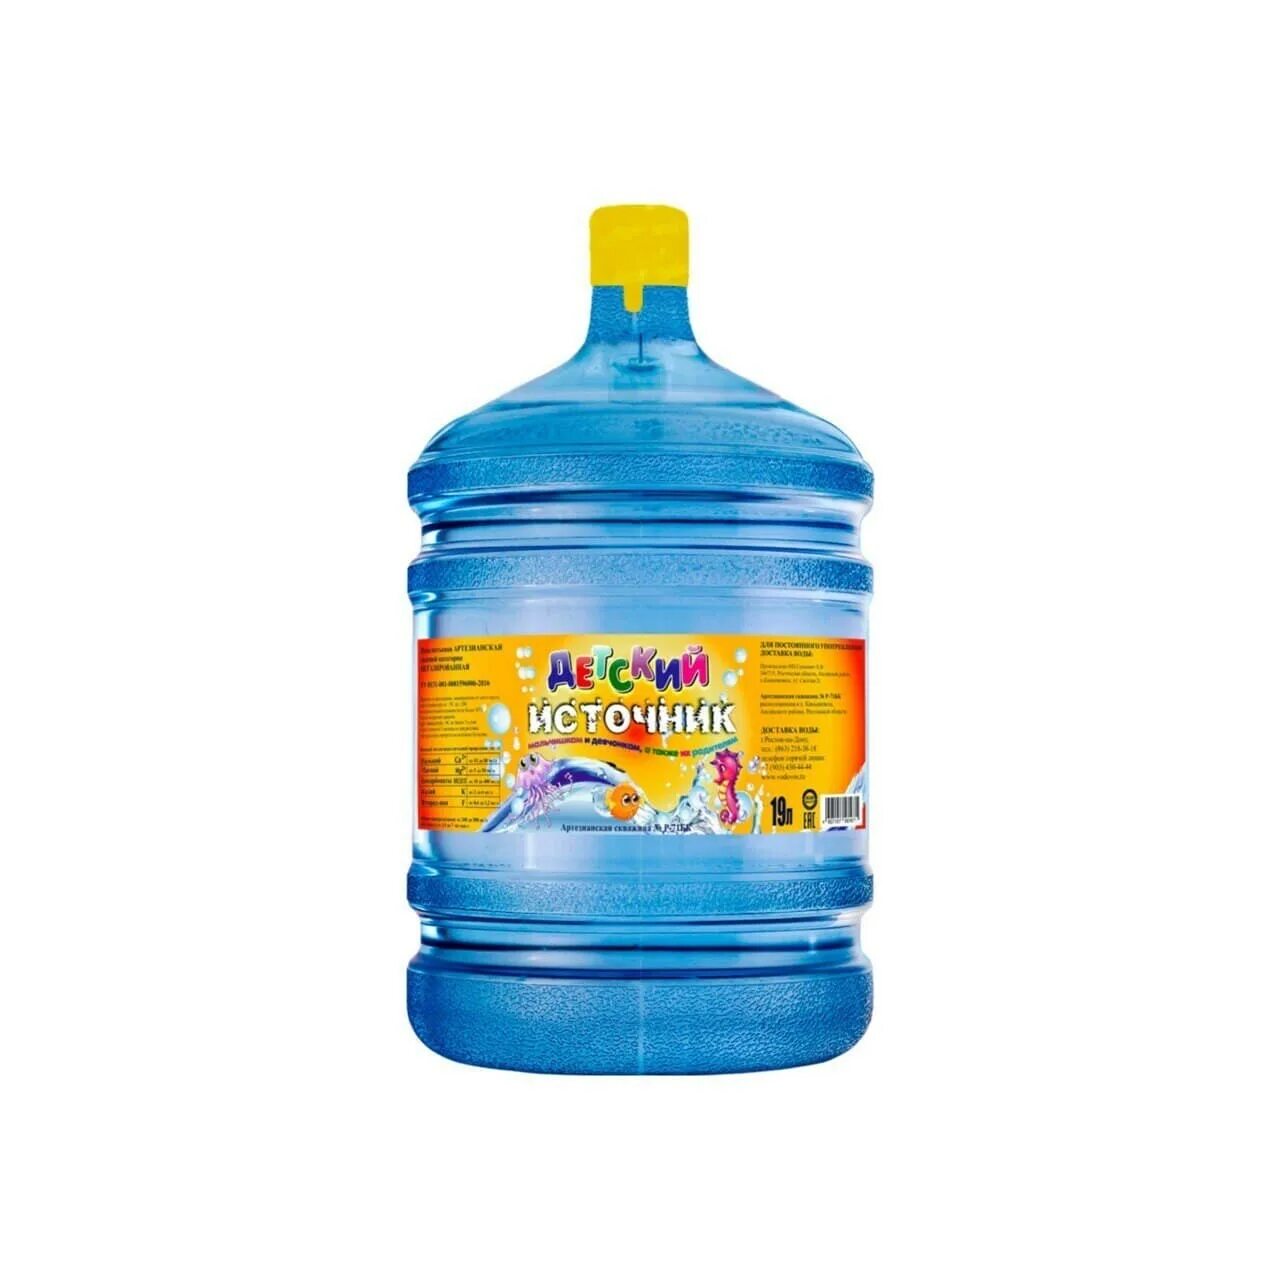 1 вода 19 литров. Вода 19 литров. Детская вода 19 литров. Вода детская 19 литров с доставкой. Название воды в бутылках 19 литров.